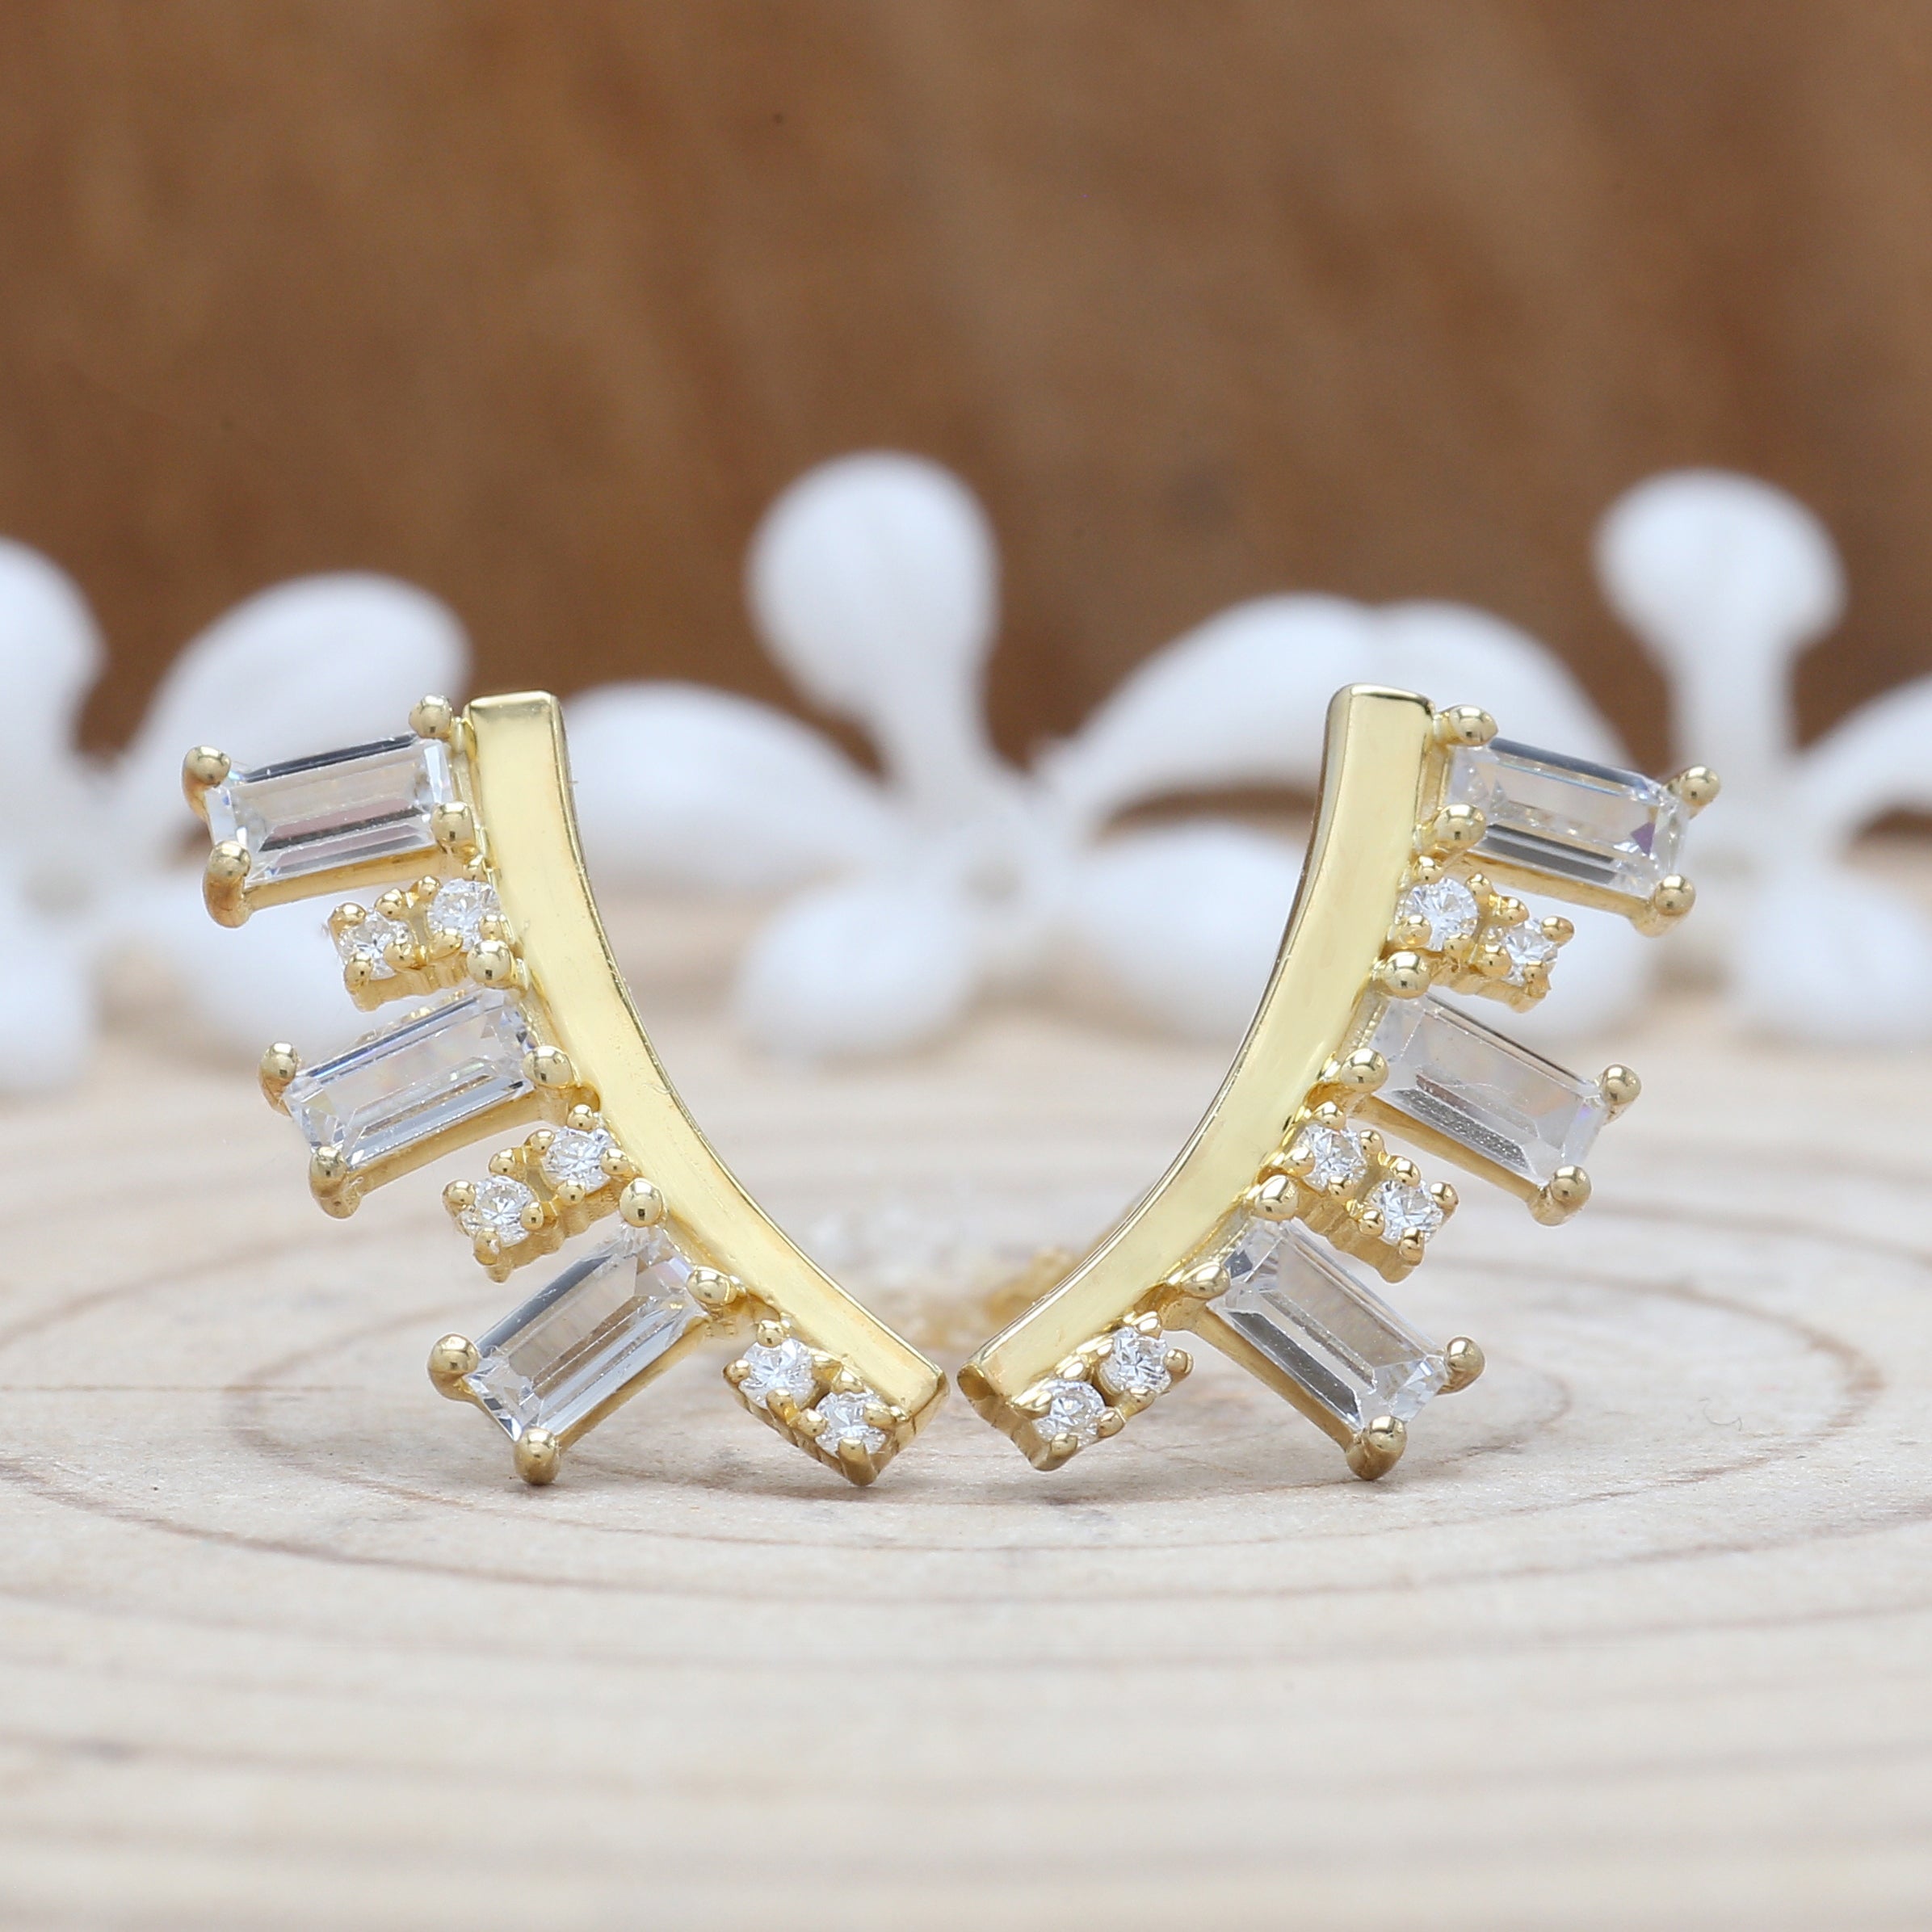 0.84 Ct White Diamond Earring, Baguette Diamond Earring, Round Diamond Earring, 14K Yellow Gold Earring, Gift For Her, Wedding Gift KD935